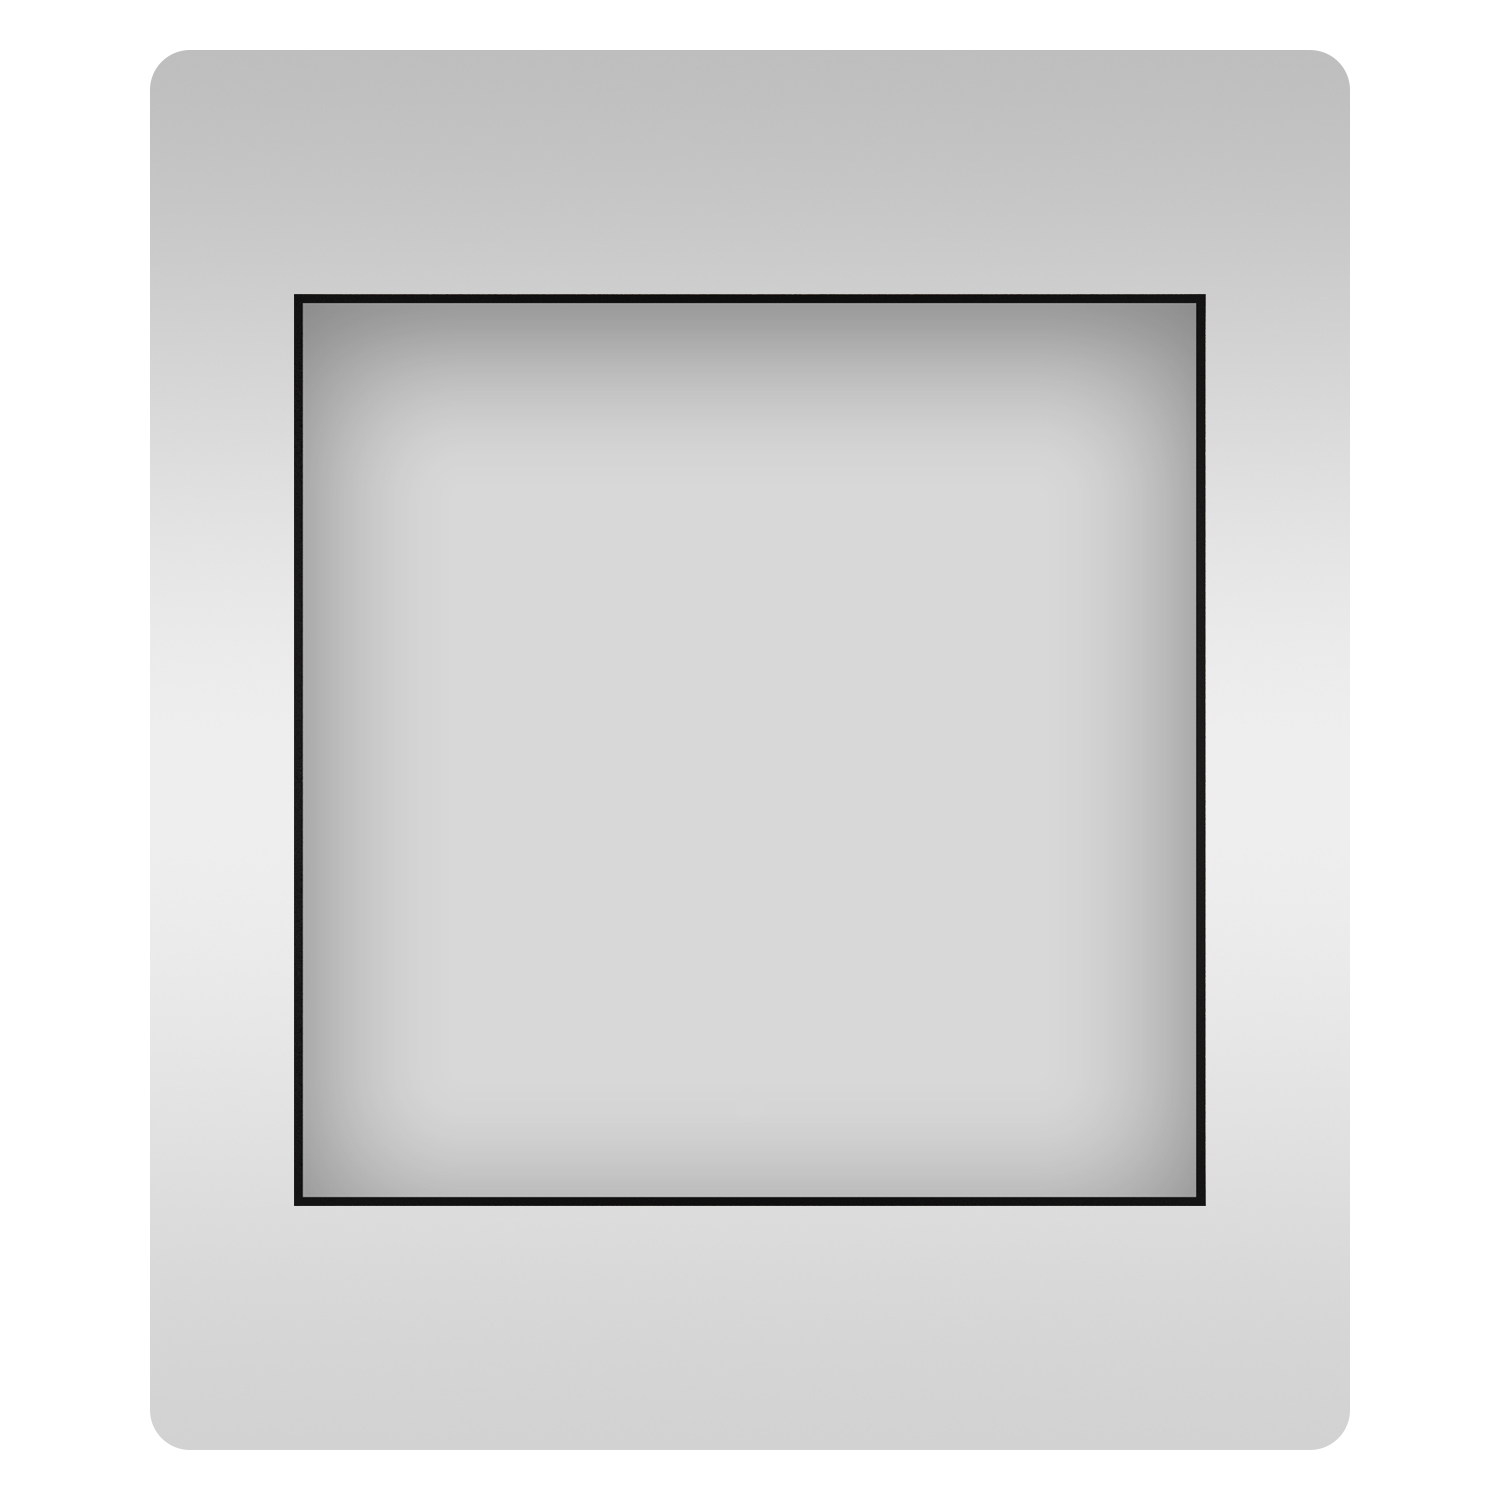 Влагостойкое квадратное зеркало Wellsee 7 Rays' Spectrum 172200280, 50х50 см лоскут для рукоделия мех на трикотажной основе 50х50 см белый